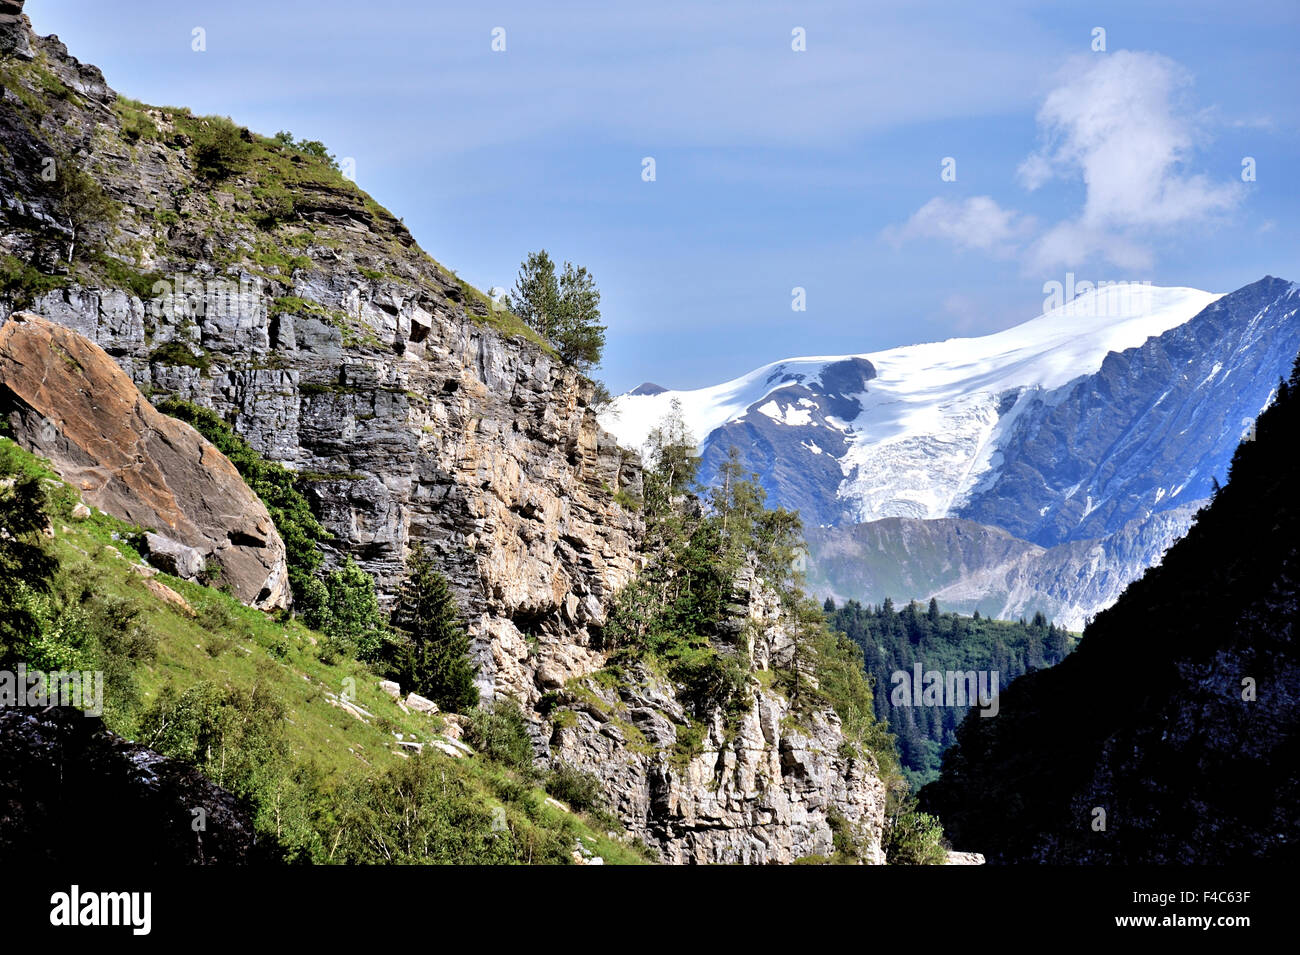 La montagne de La Grande Motte, Tignes, Alpes, France Banque D'Images